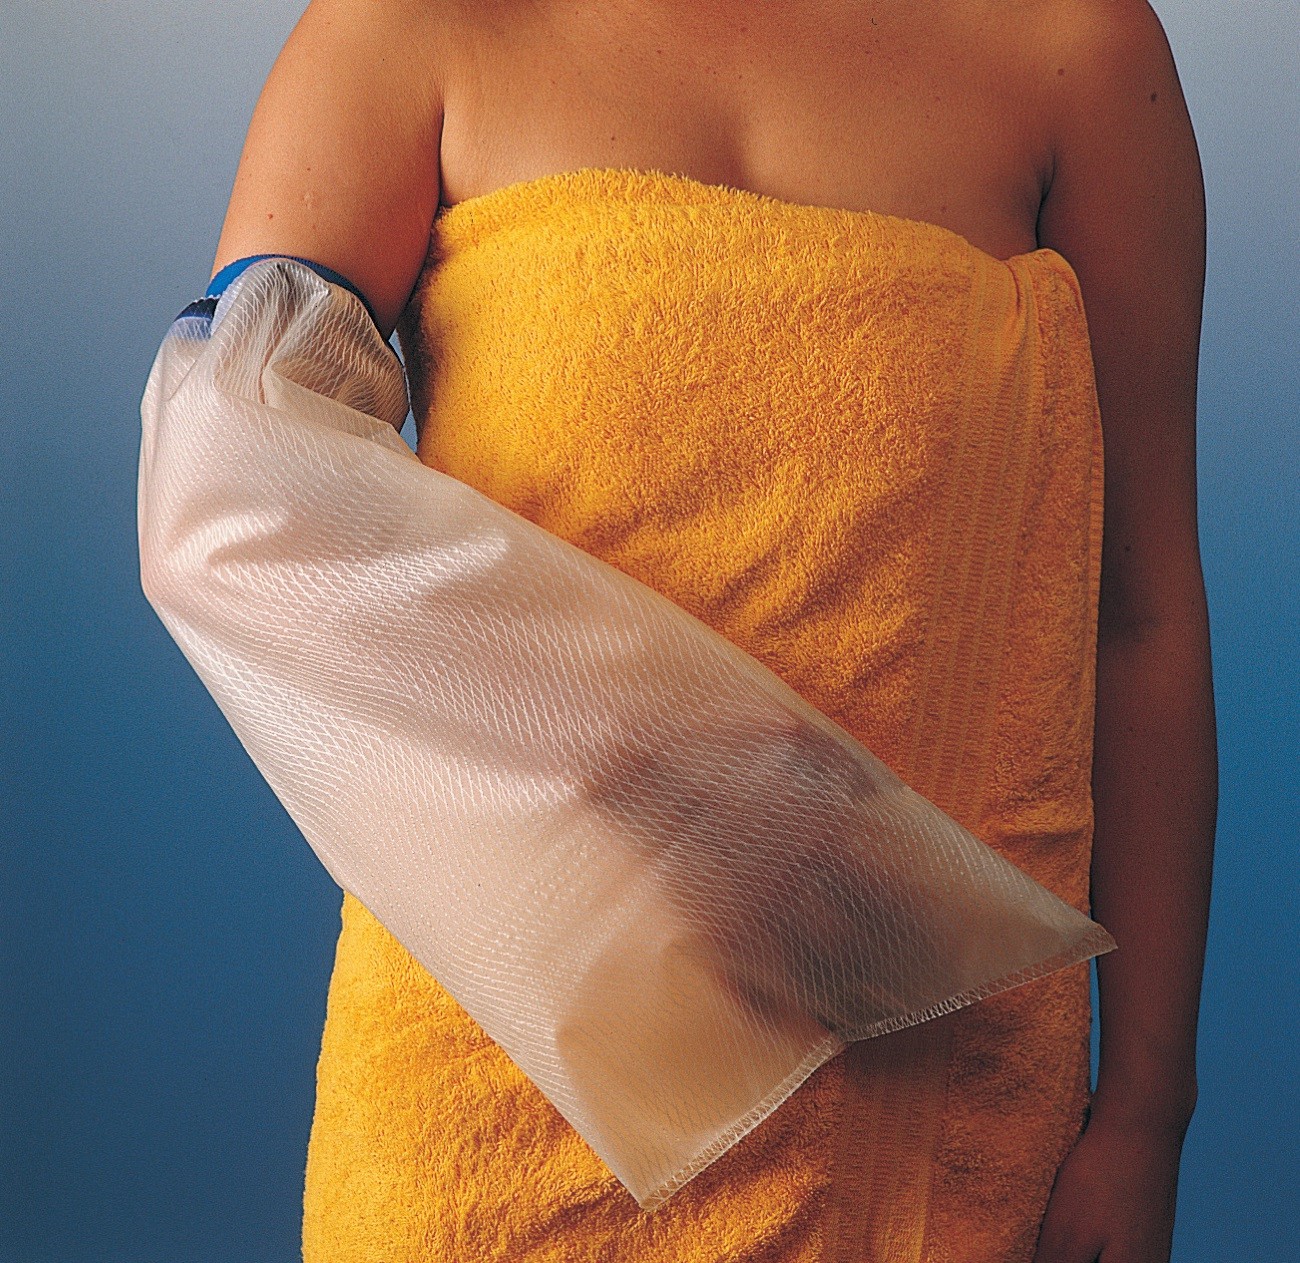 Kunststoff-Schutz für Verbände beim Duschen oder Waschen